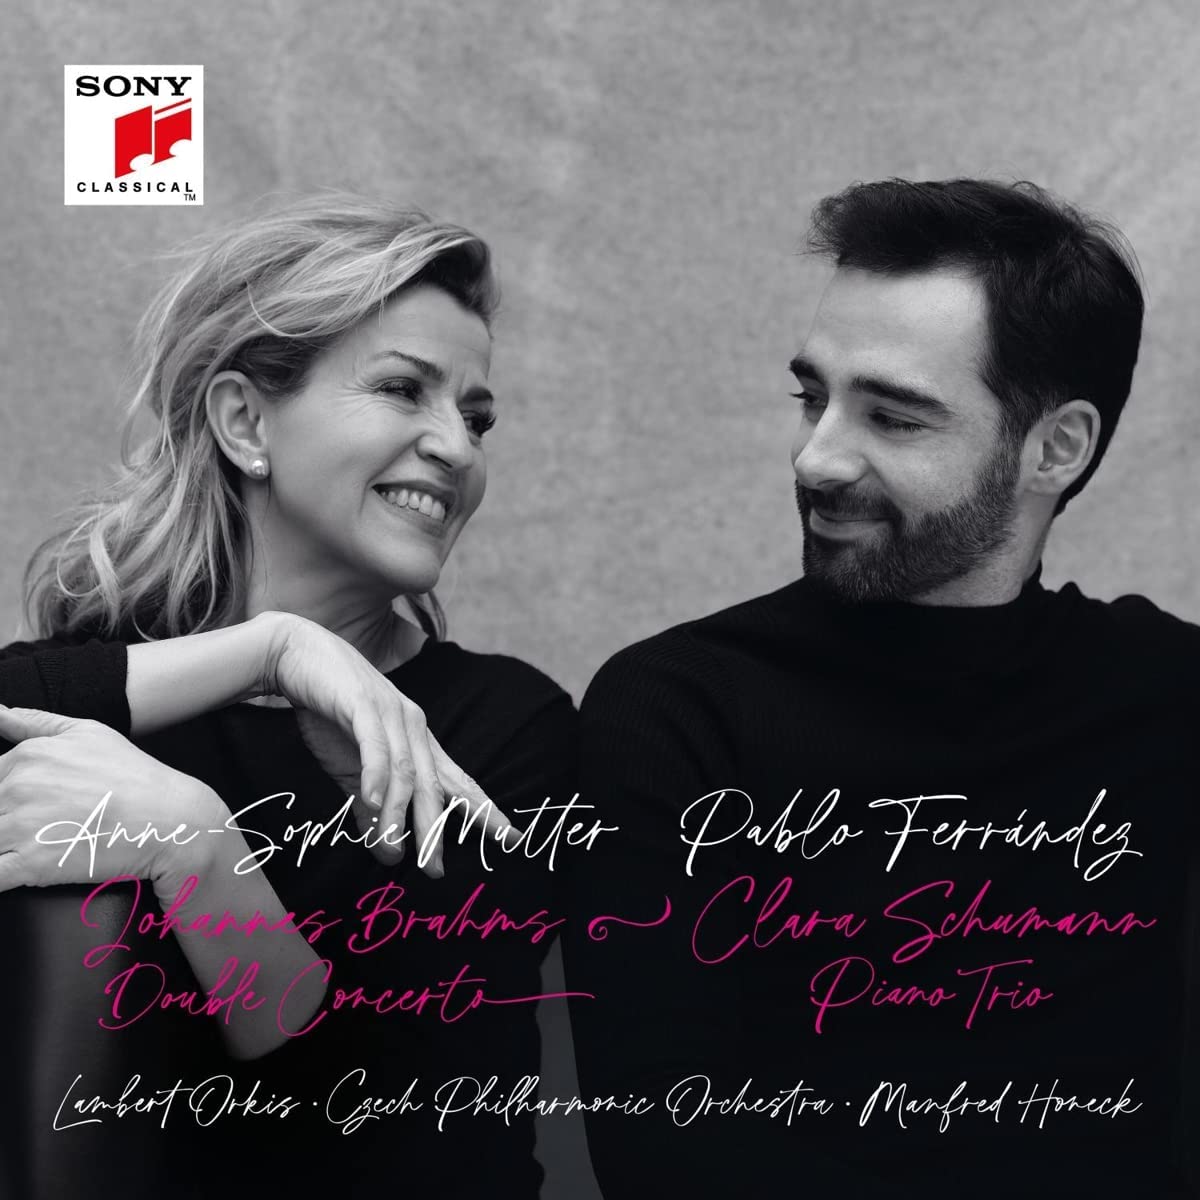 Vinile Anne-Sophie Mutter / Pablo Ferrandez: Johannes Brahms - Double Concerto / Clara Schumann - Piano Trio (2 Lp) NUOVO SIGILLATO, EDIZIONE DEL 04/11/2022 SUBITO DISPONIBILE